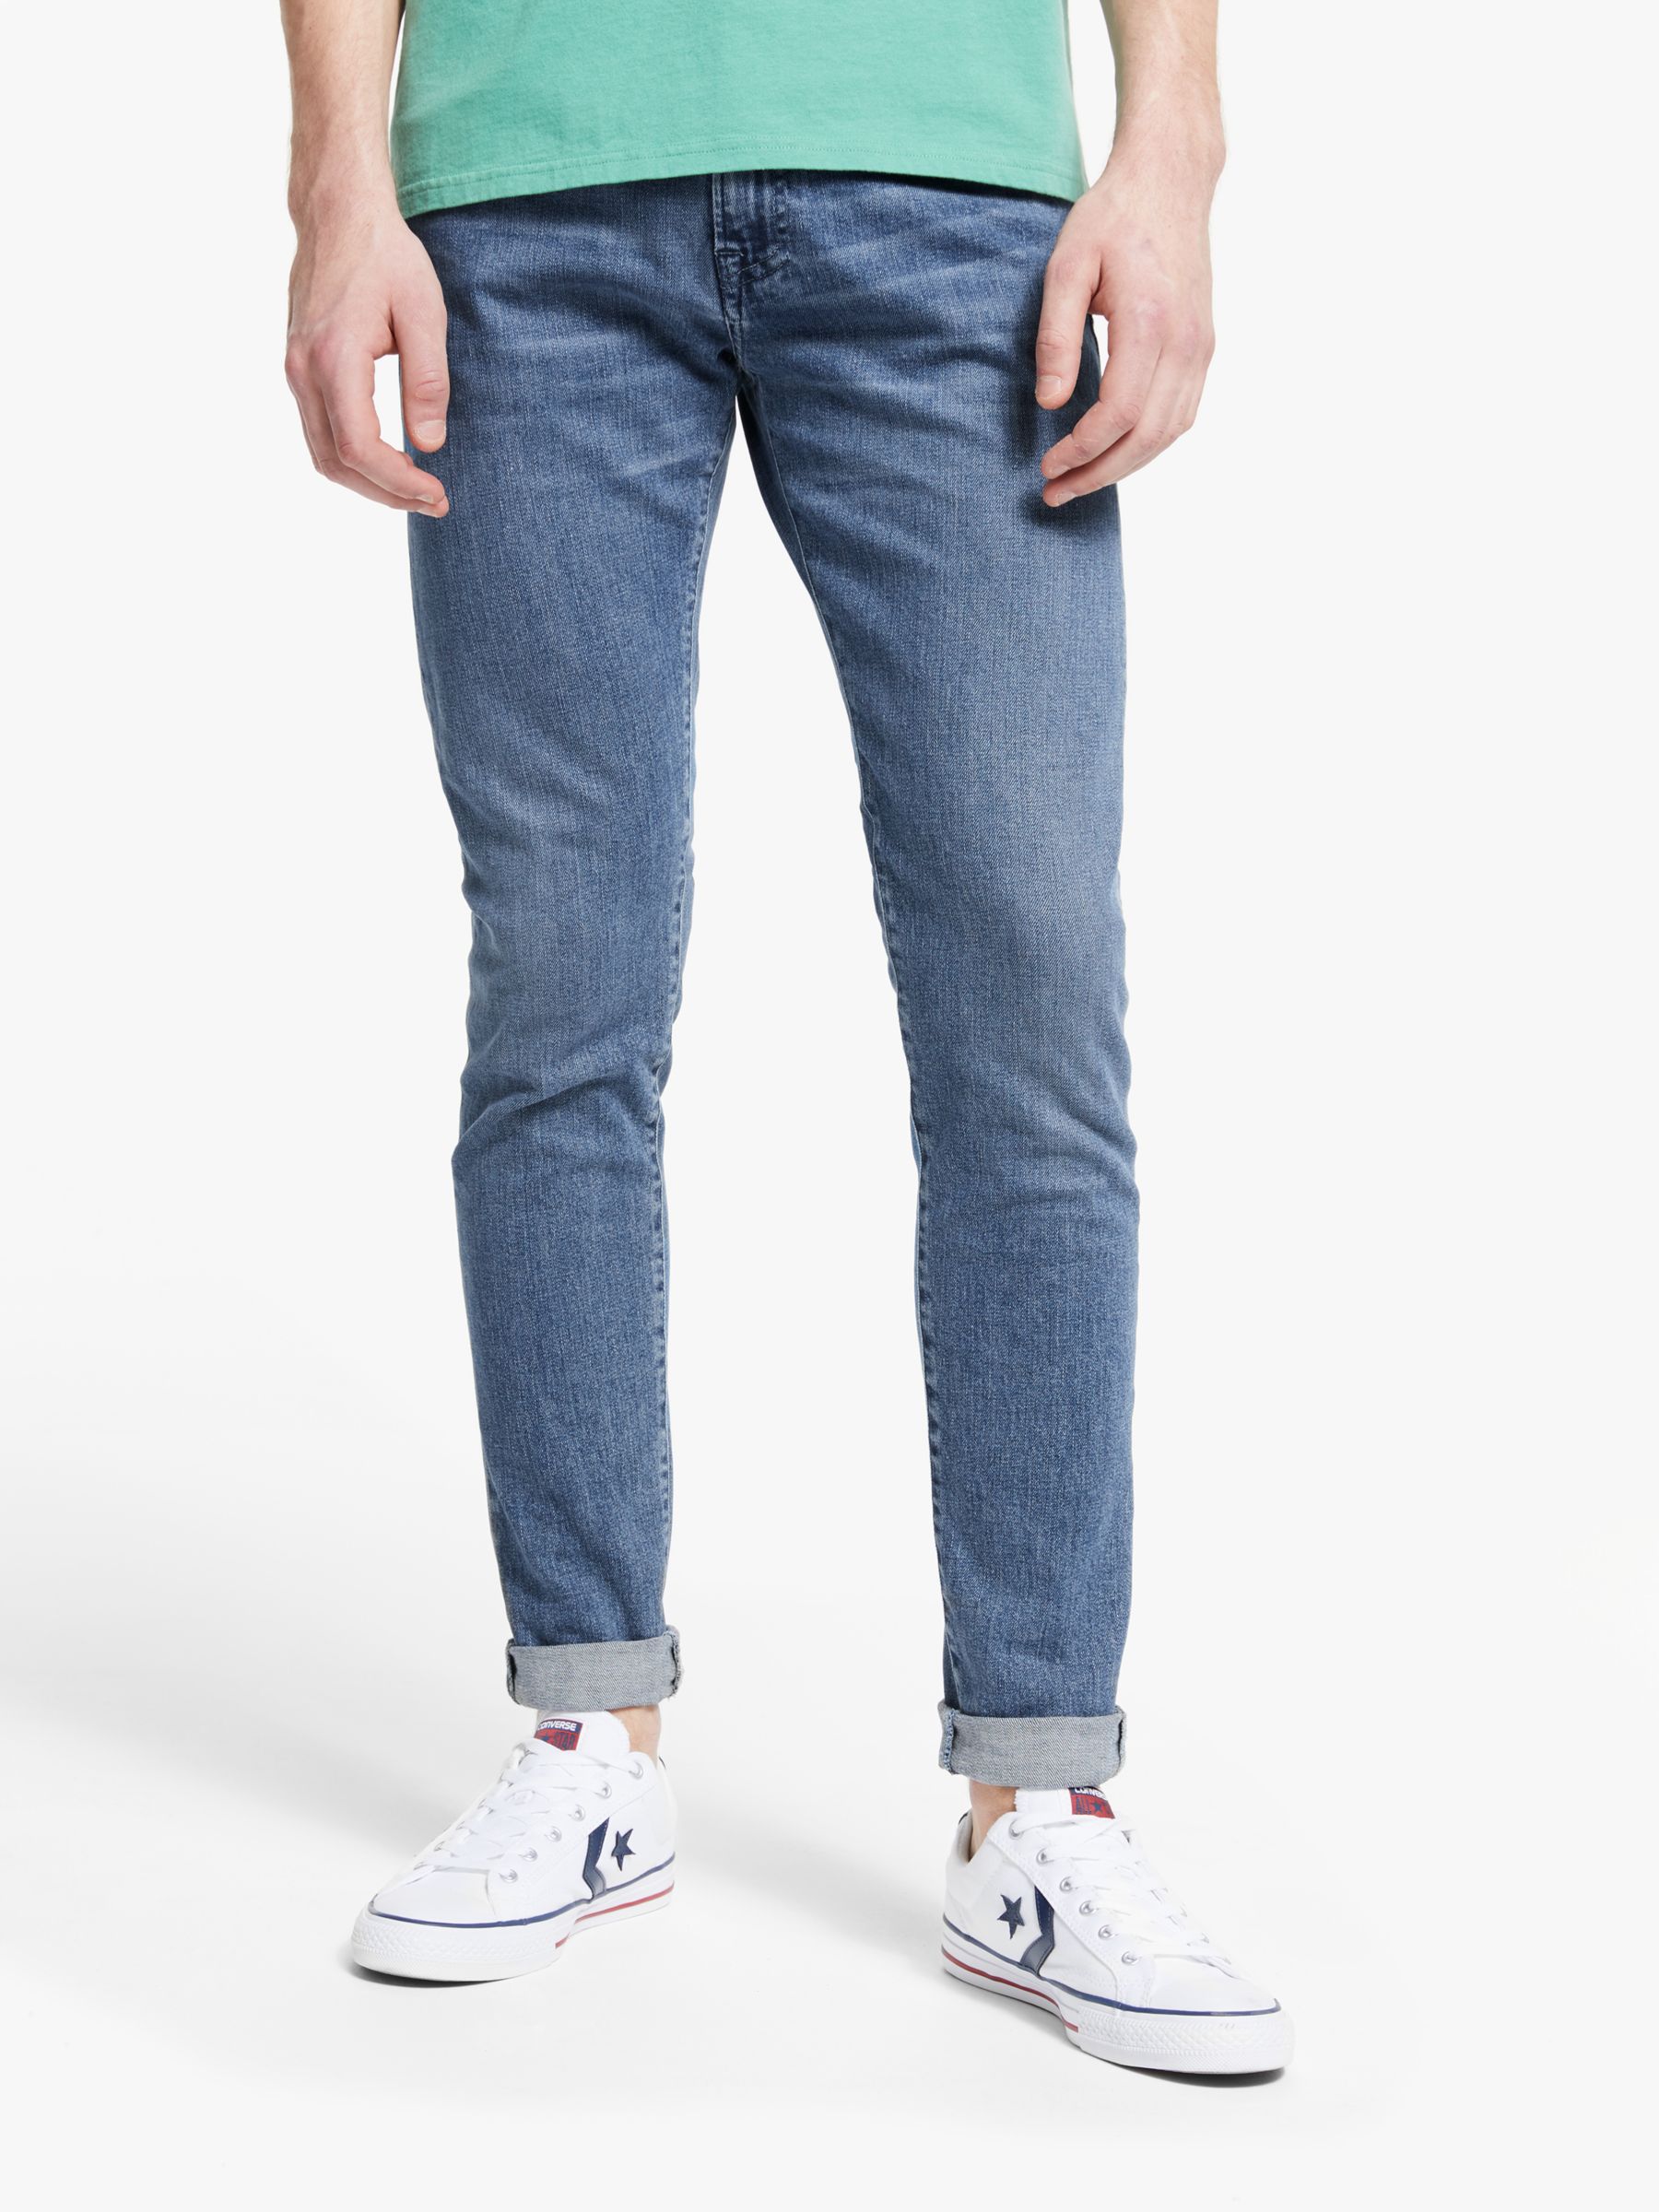 edwin jeans online